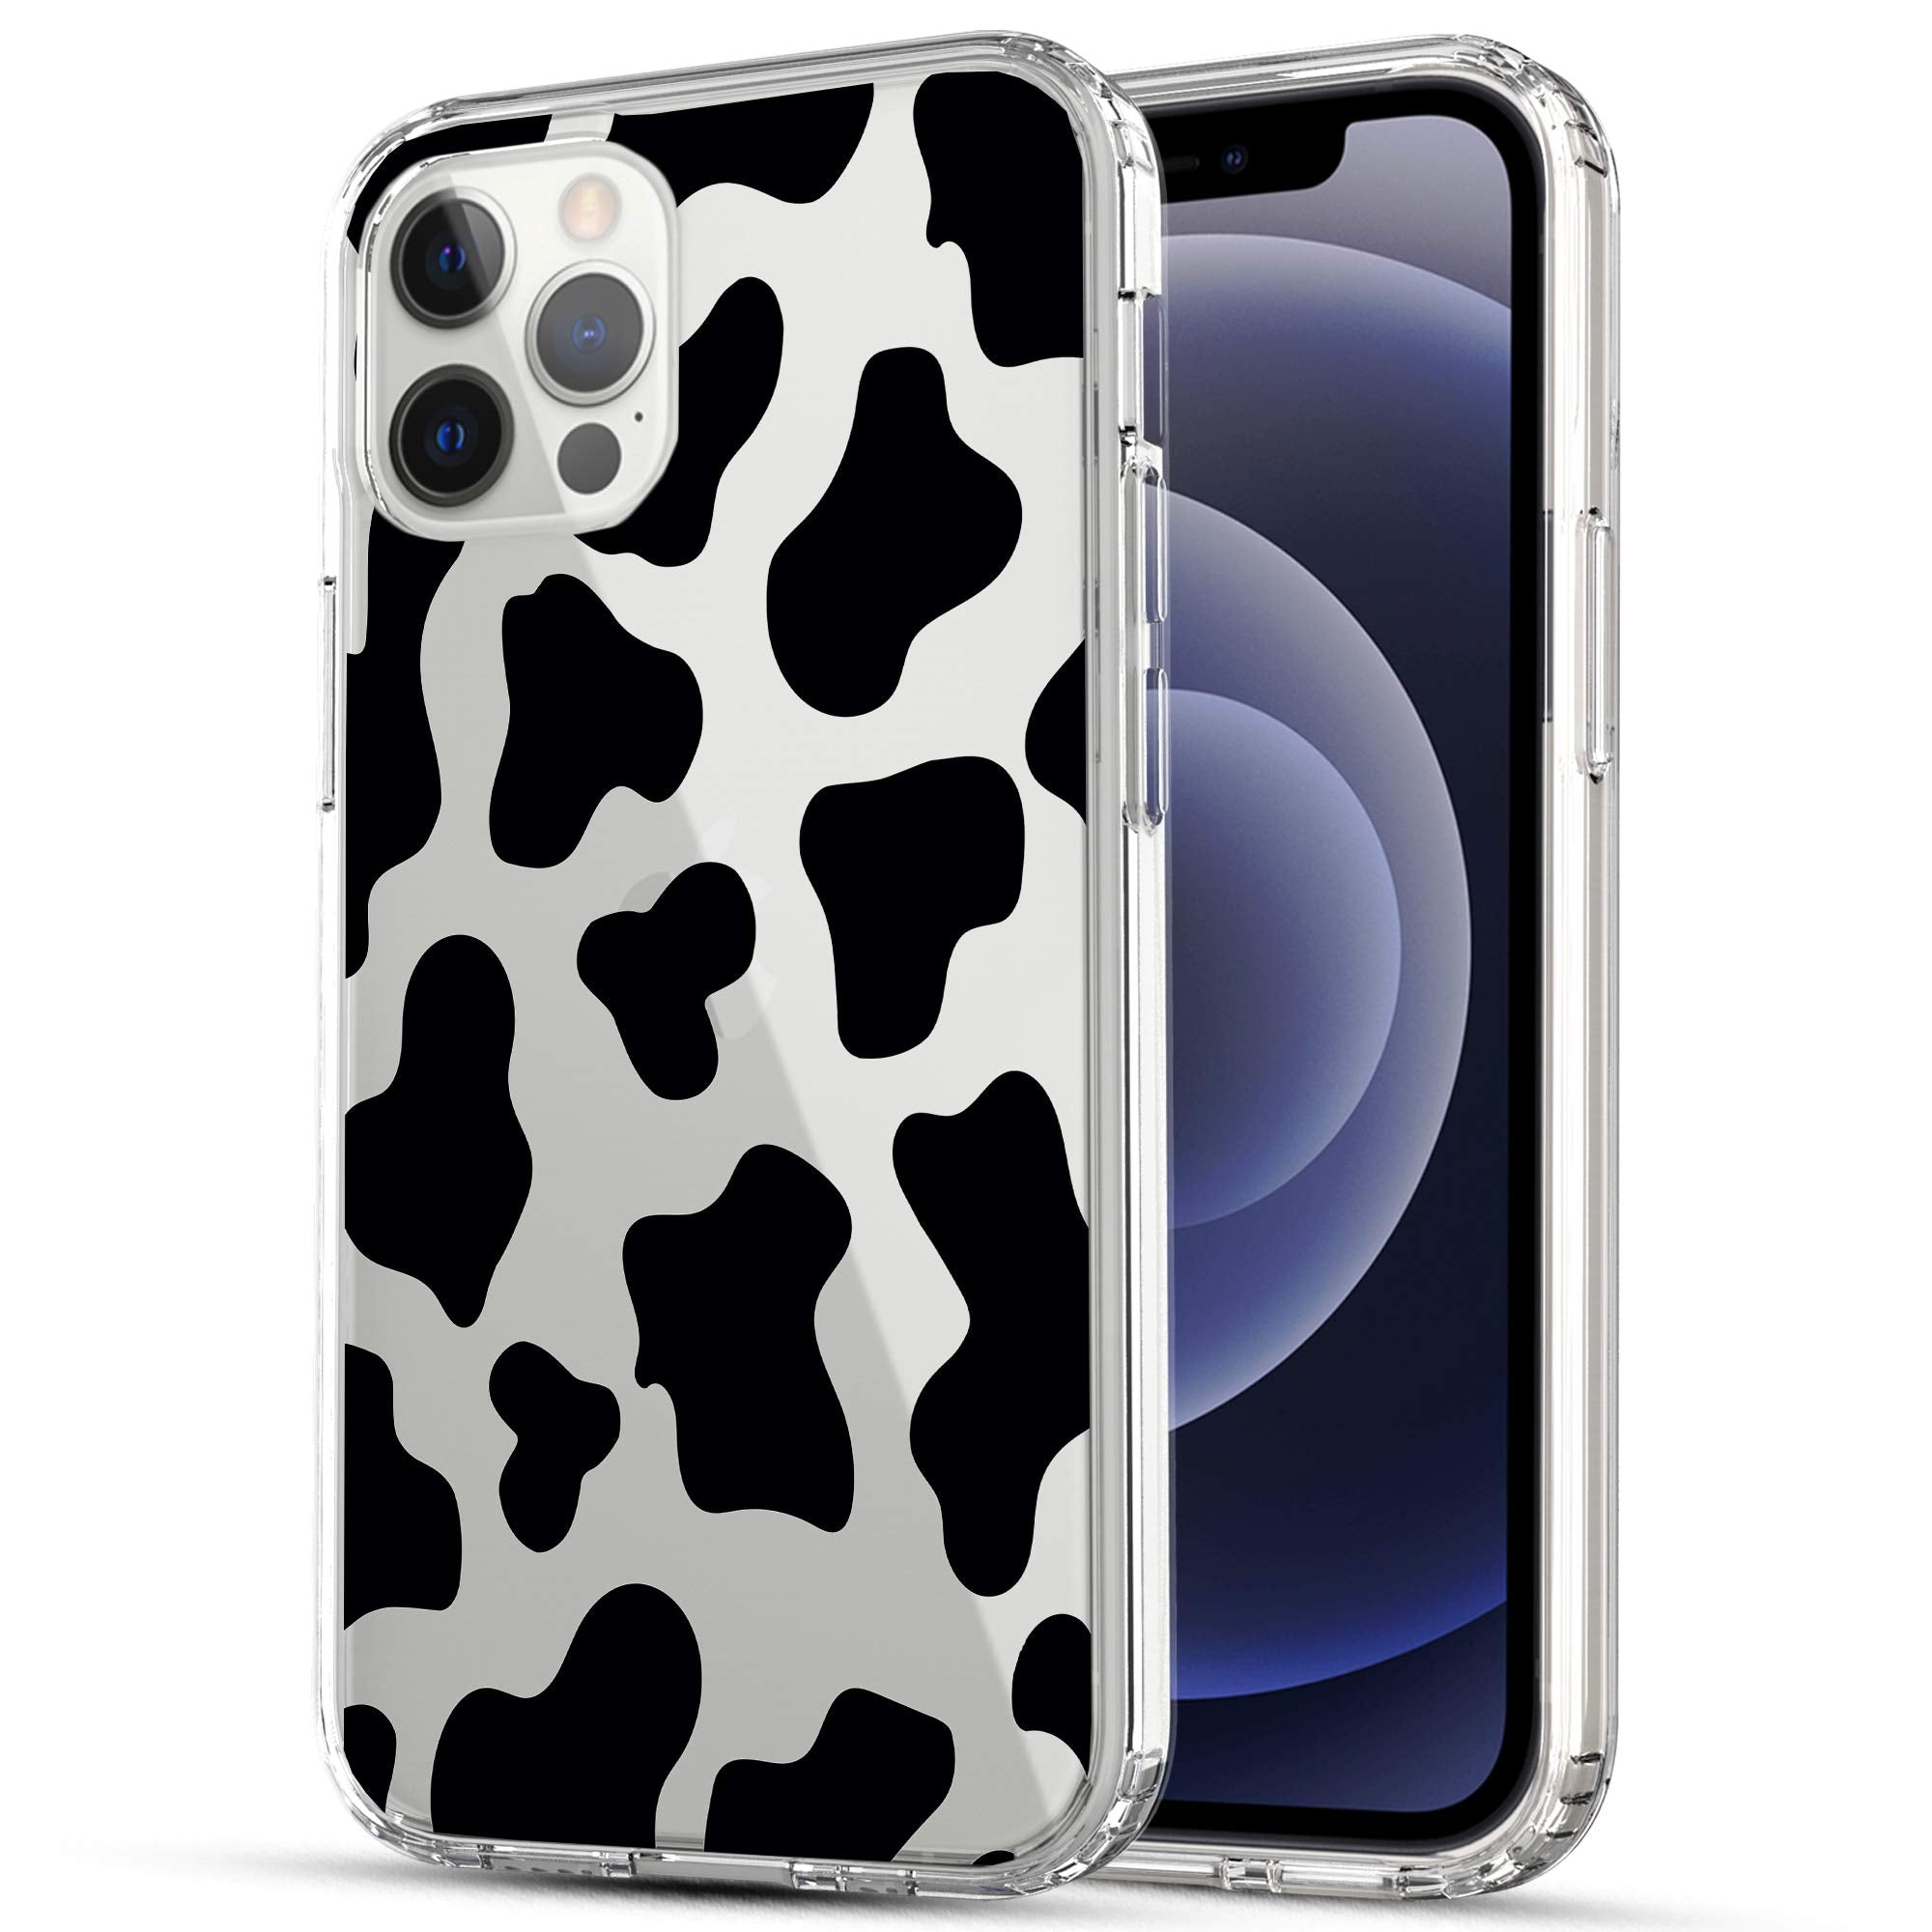 iPhone 12 / iPhone 12 Pro Case, Anti-Scratch Clear Case - Cow Print